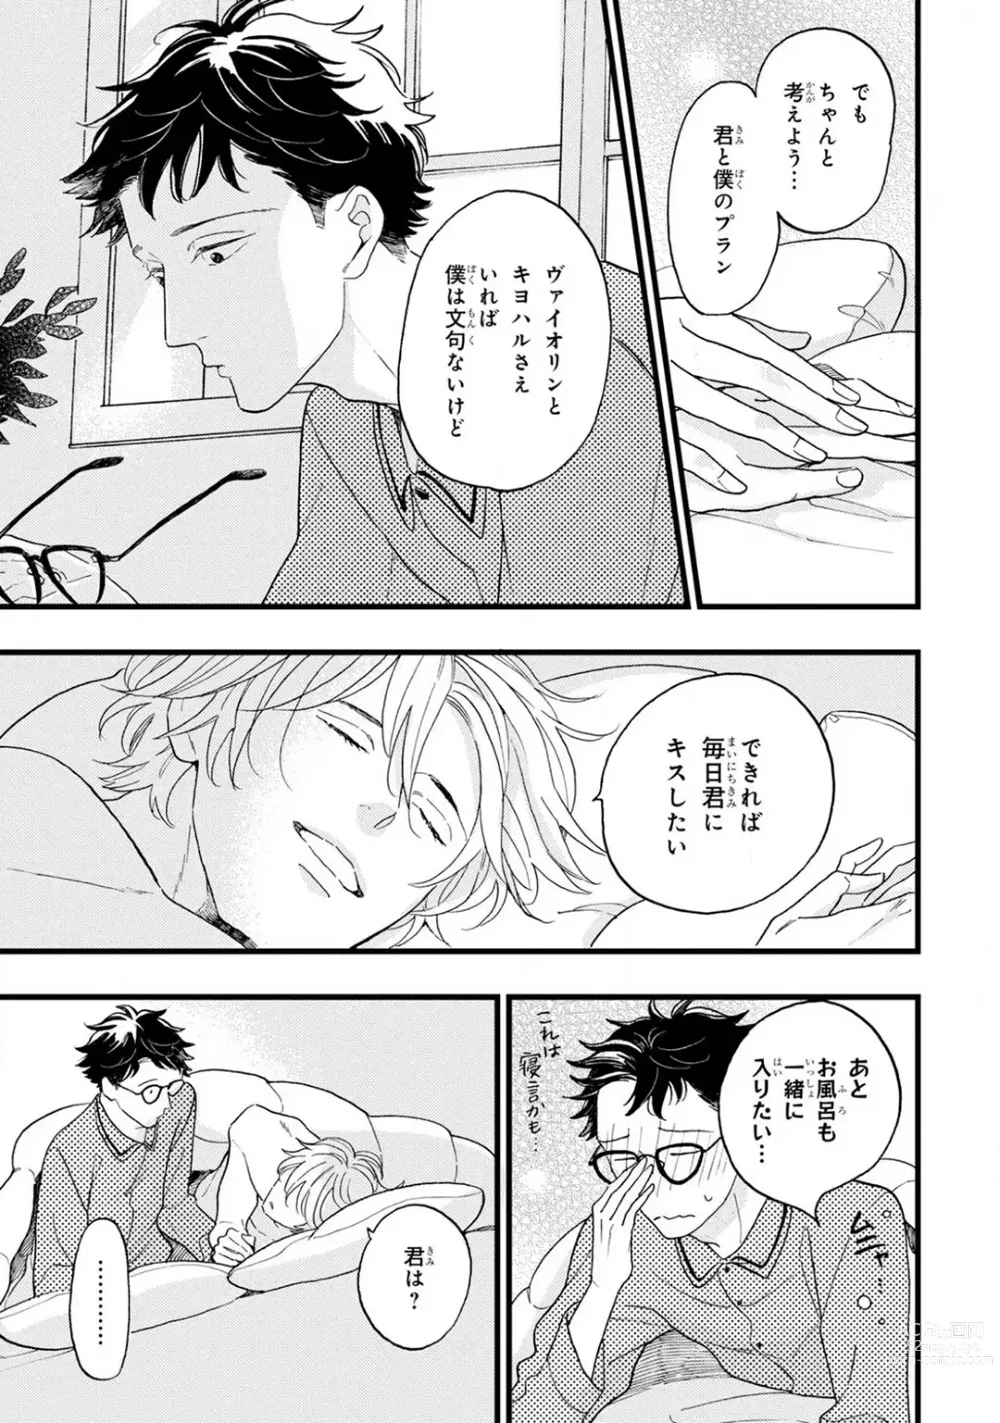 Page 225 of manga Boku no Muse - My muse